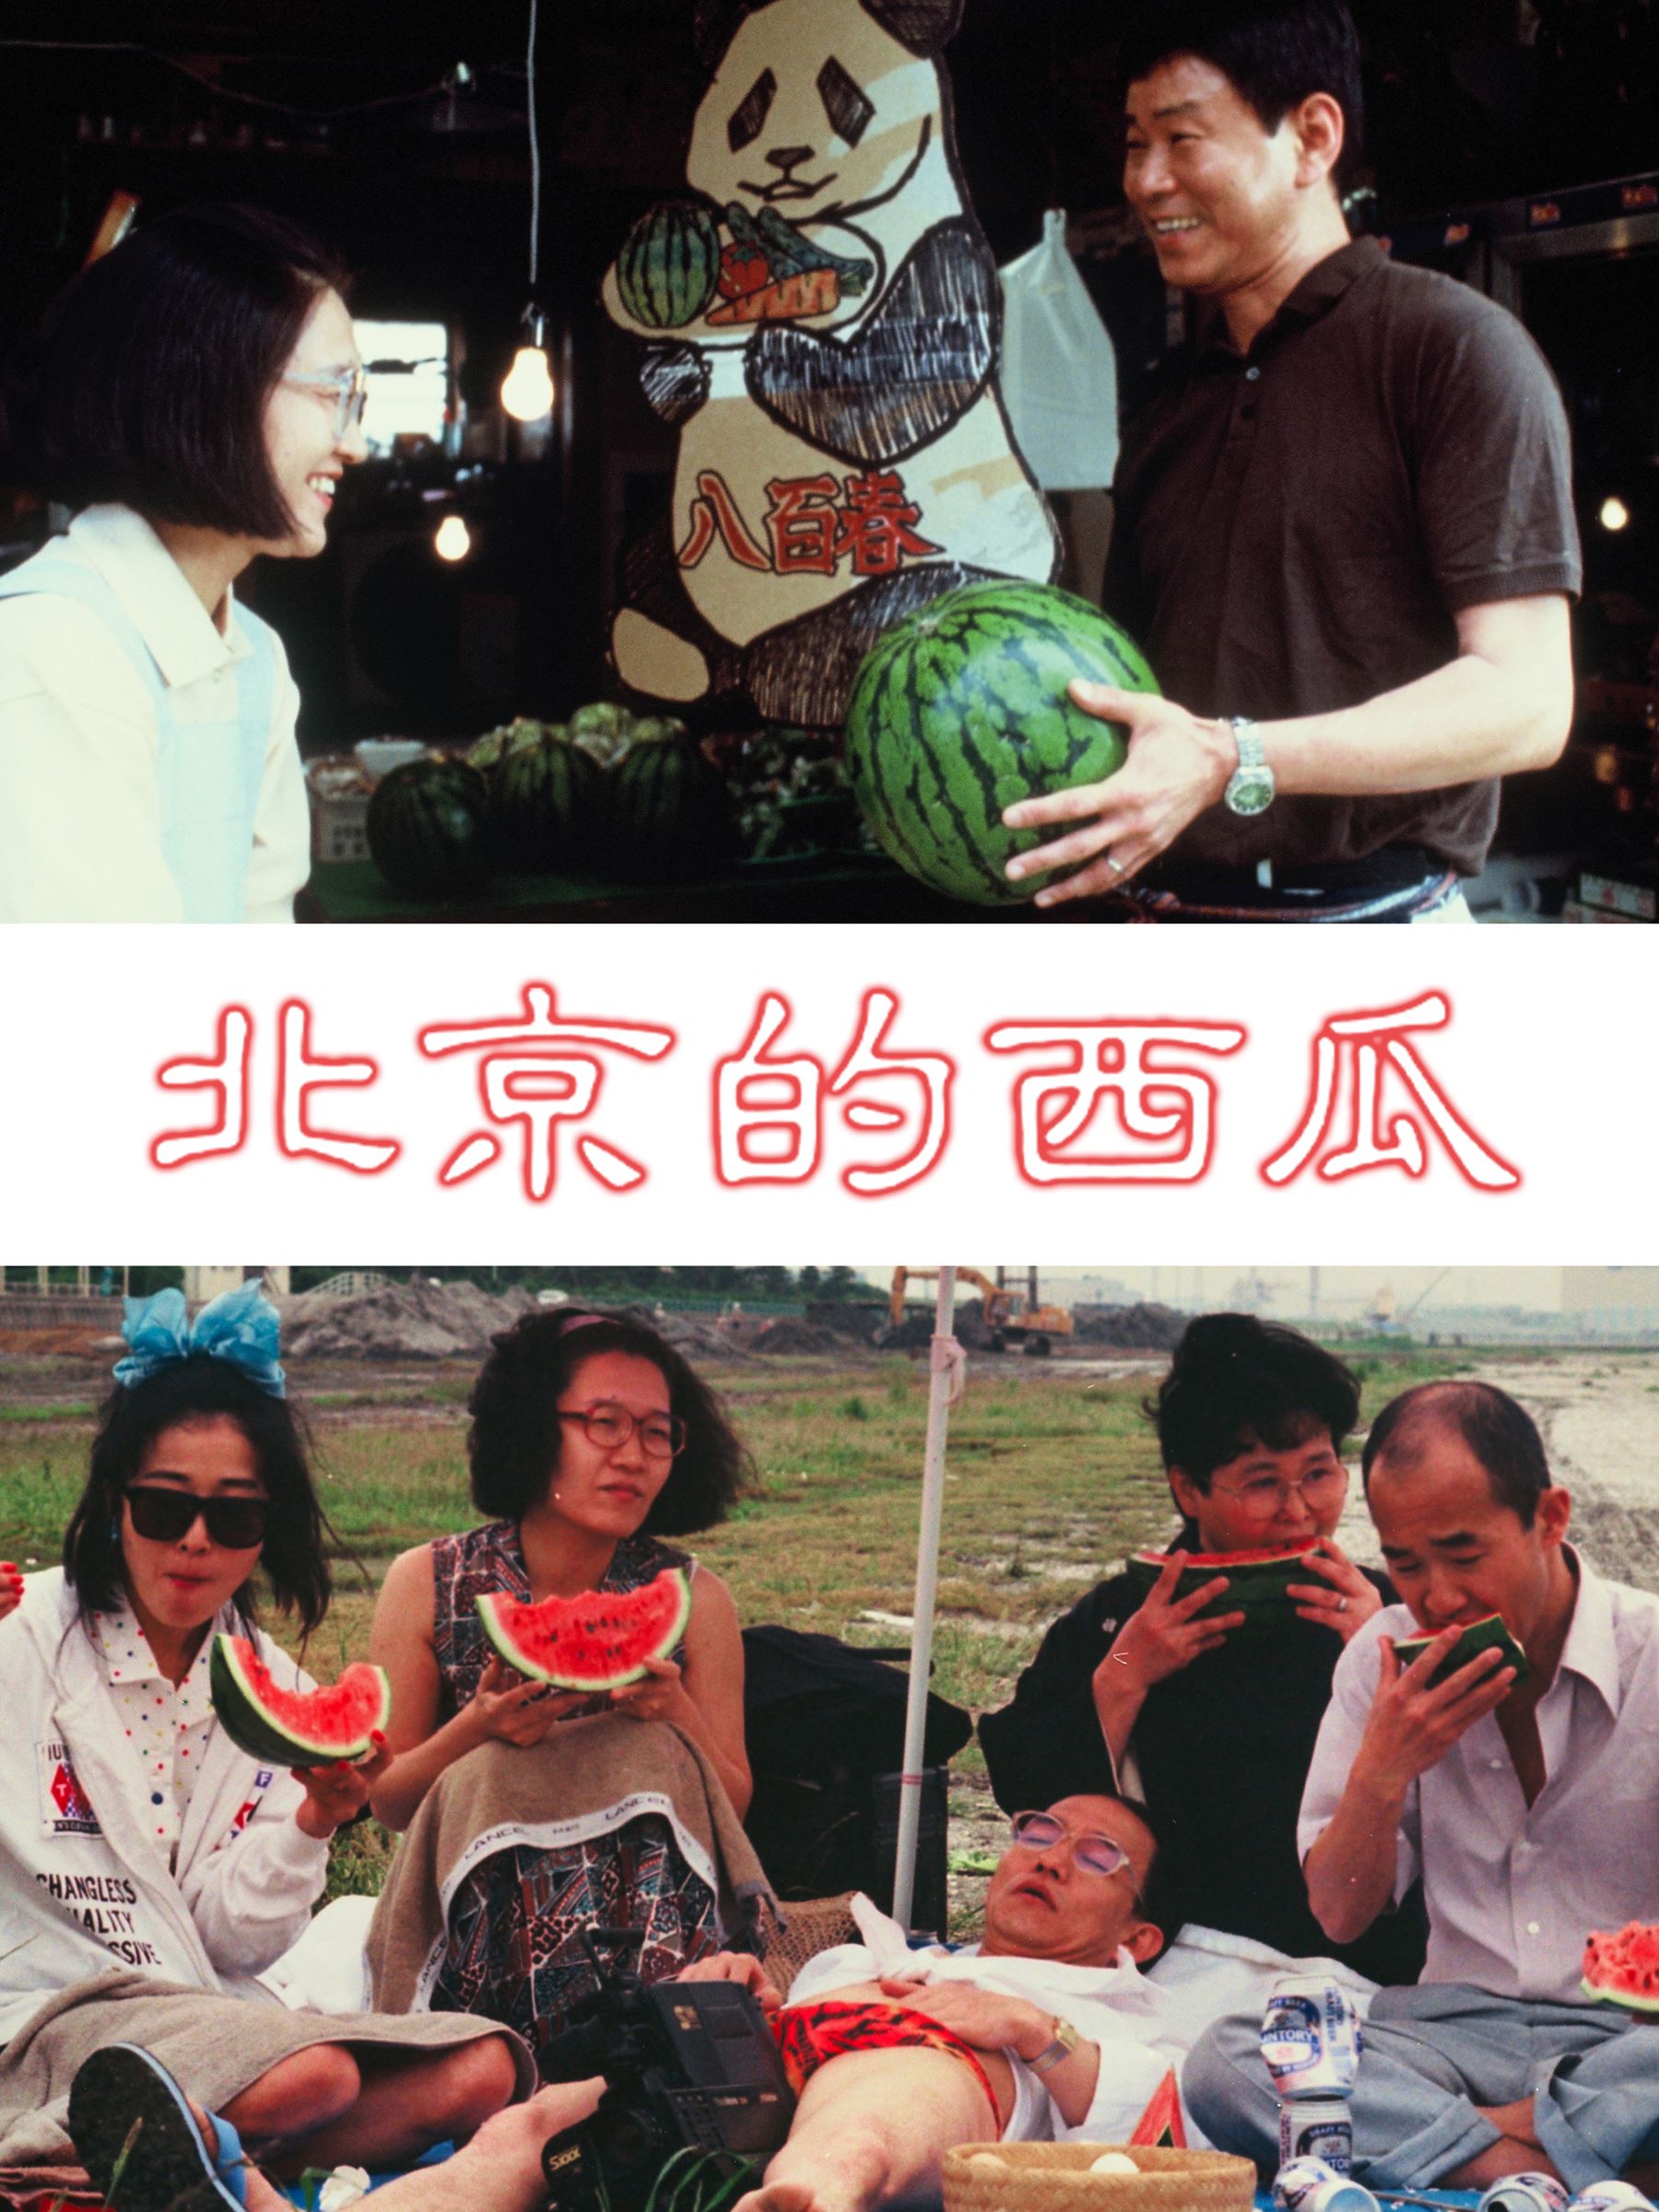 『北京的西瓜』 (c)1989 MAXDAI CO., LTD.